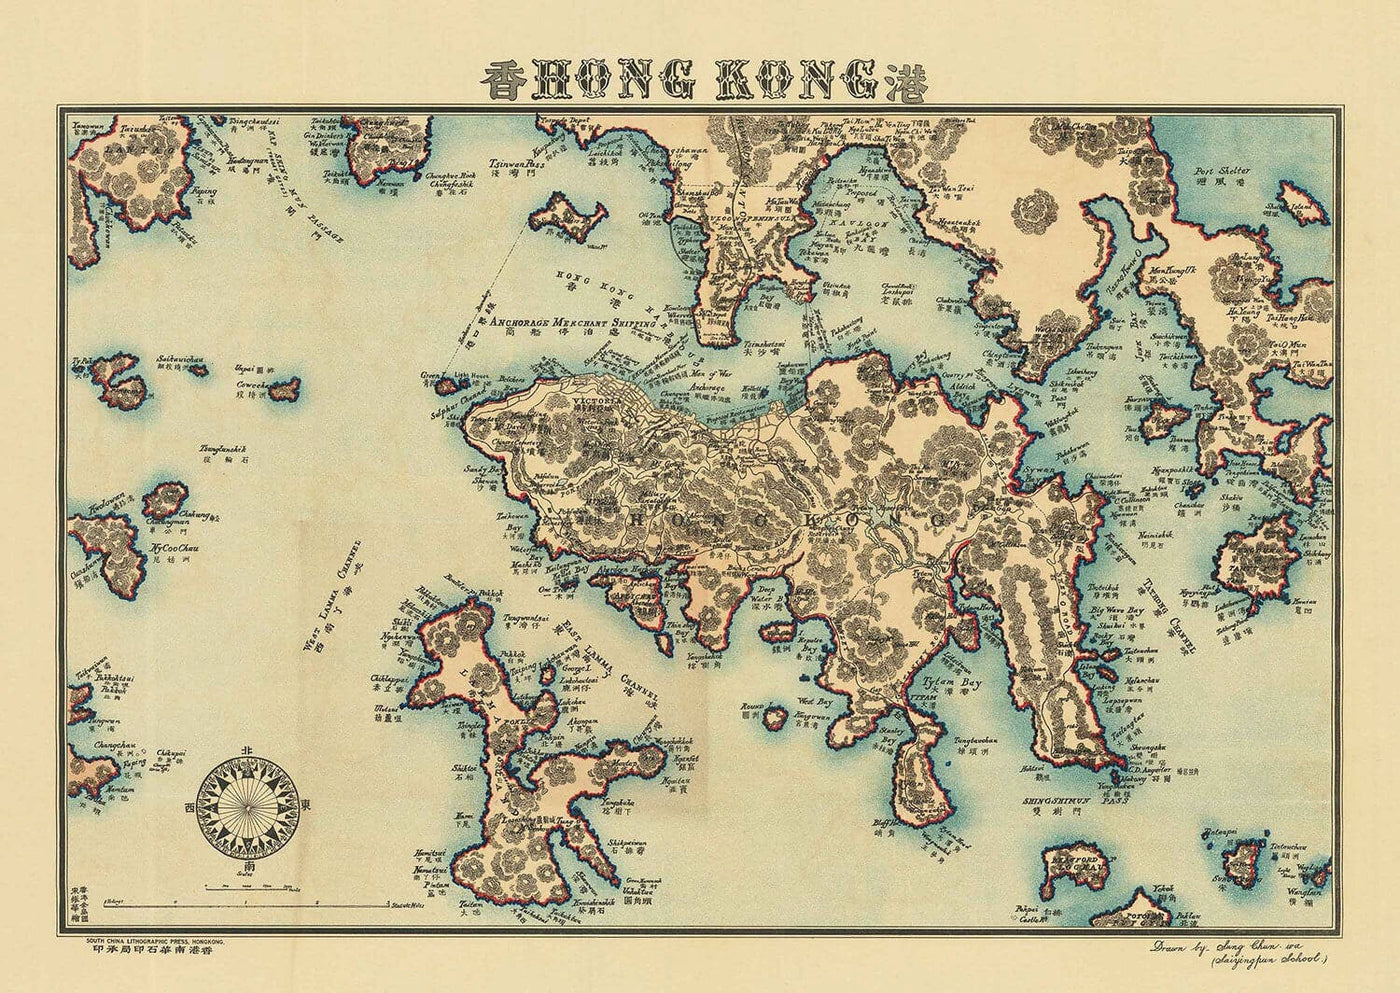 Alte Karte von Hongkong, 1924 von Sung Chun Wa - Zentrum, Kowloon, Causeway, Victoria Harbour, Inseln, Berge, Lamma